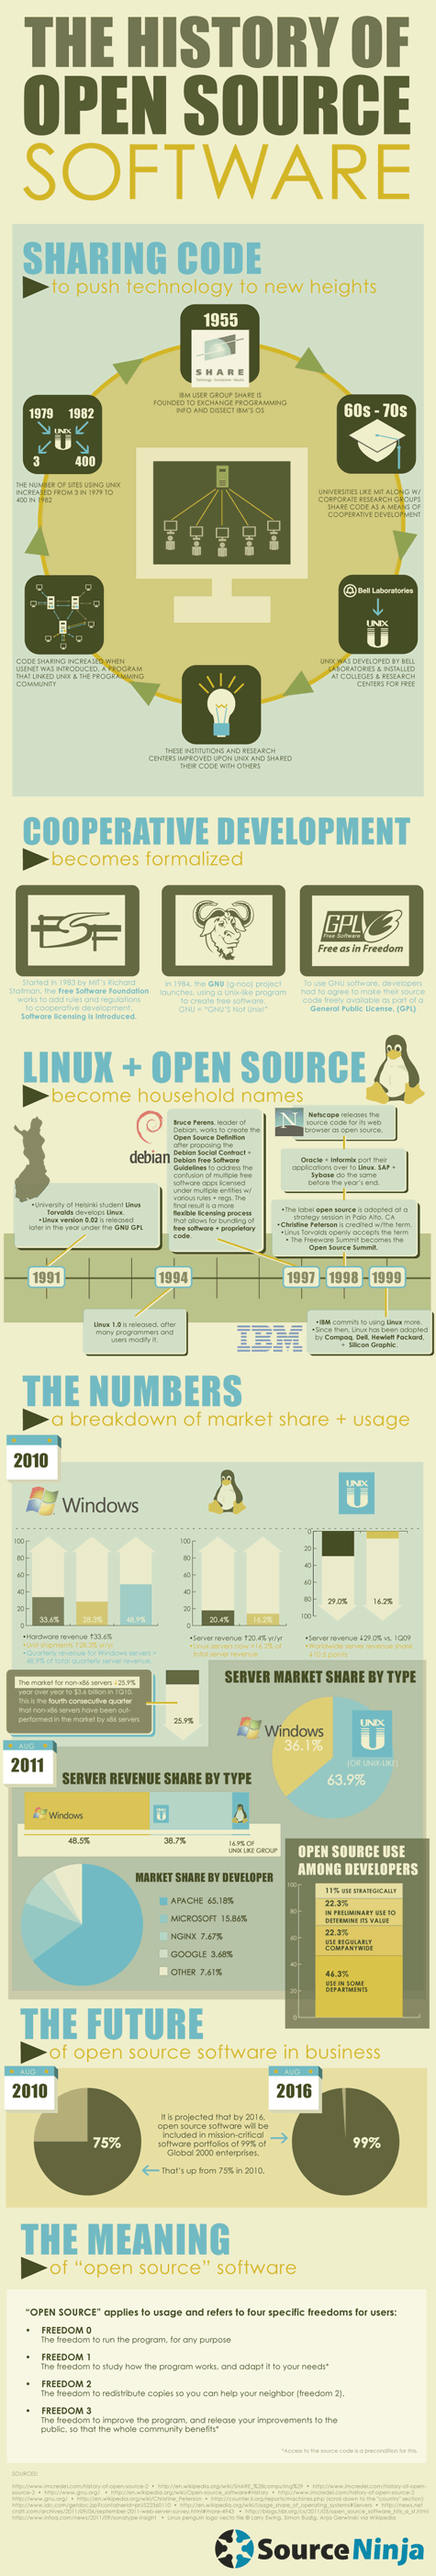 History of Open Source Software Source Ninja